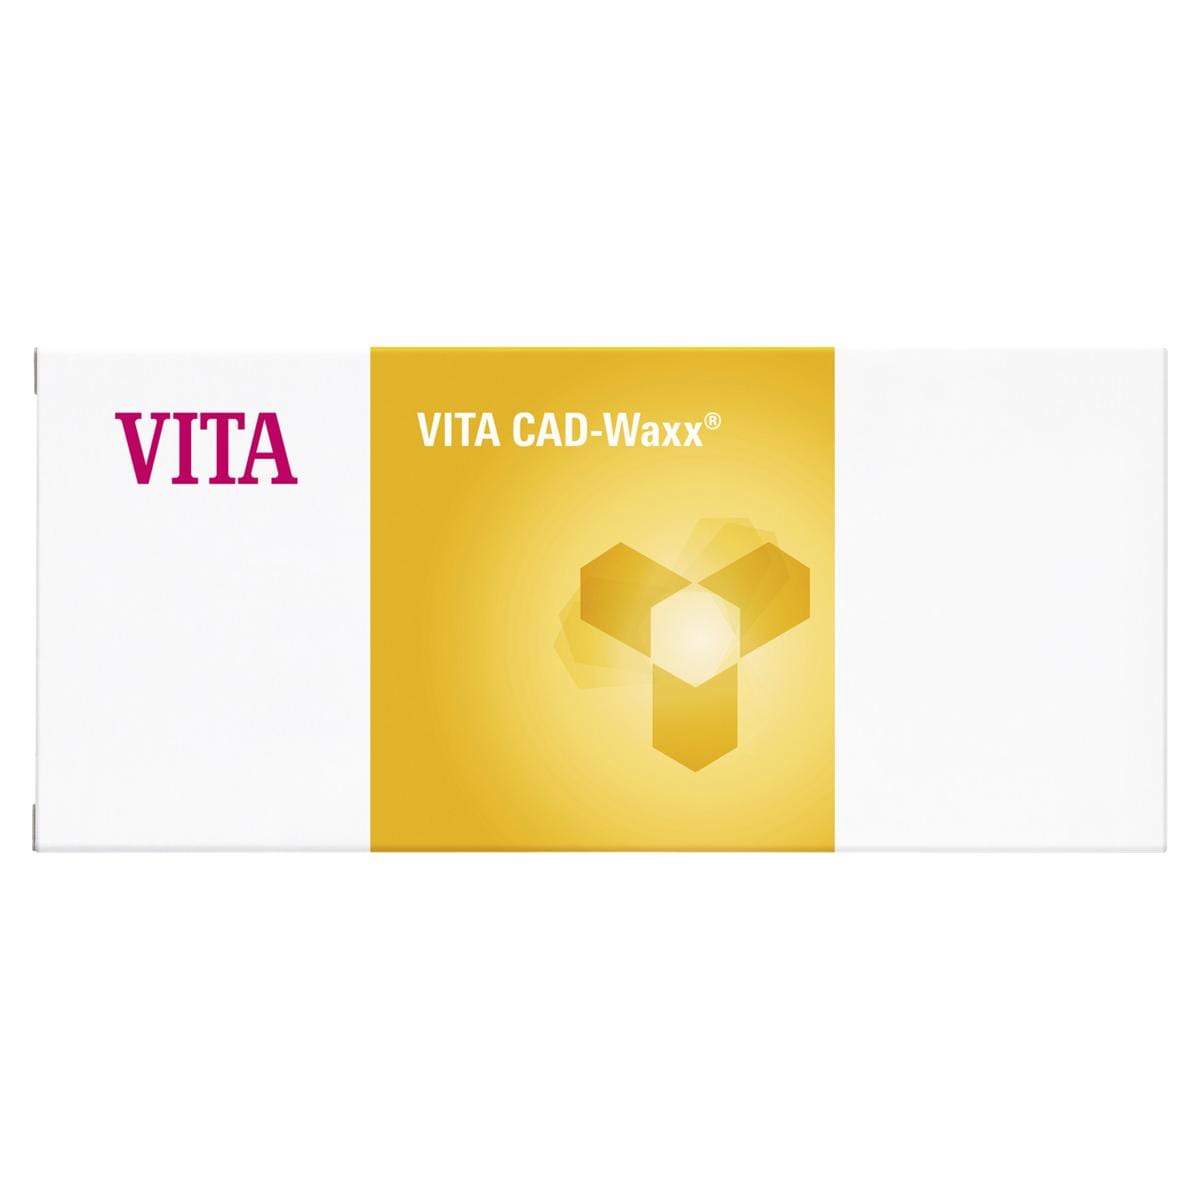 VITA CAD-Waxx for inLab® - Größe CW-40/15, Packung 10 Stück